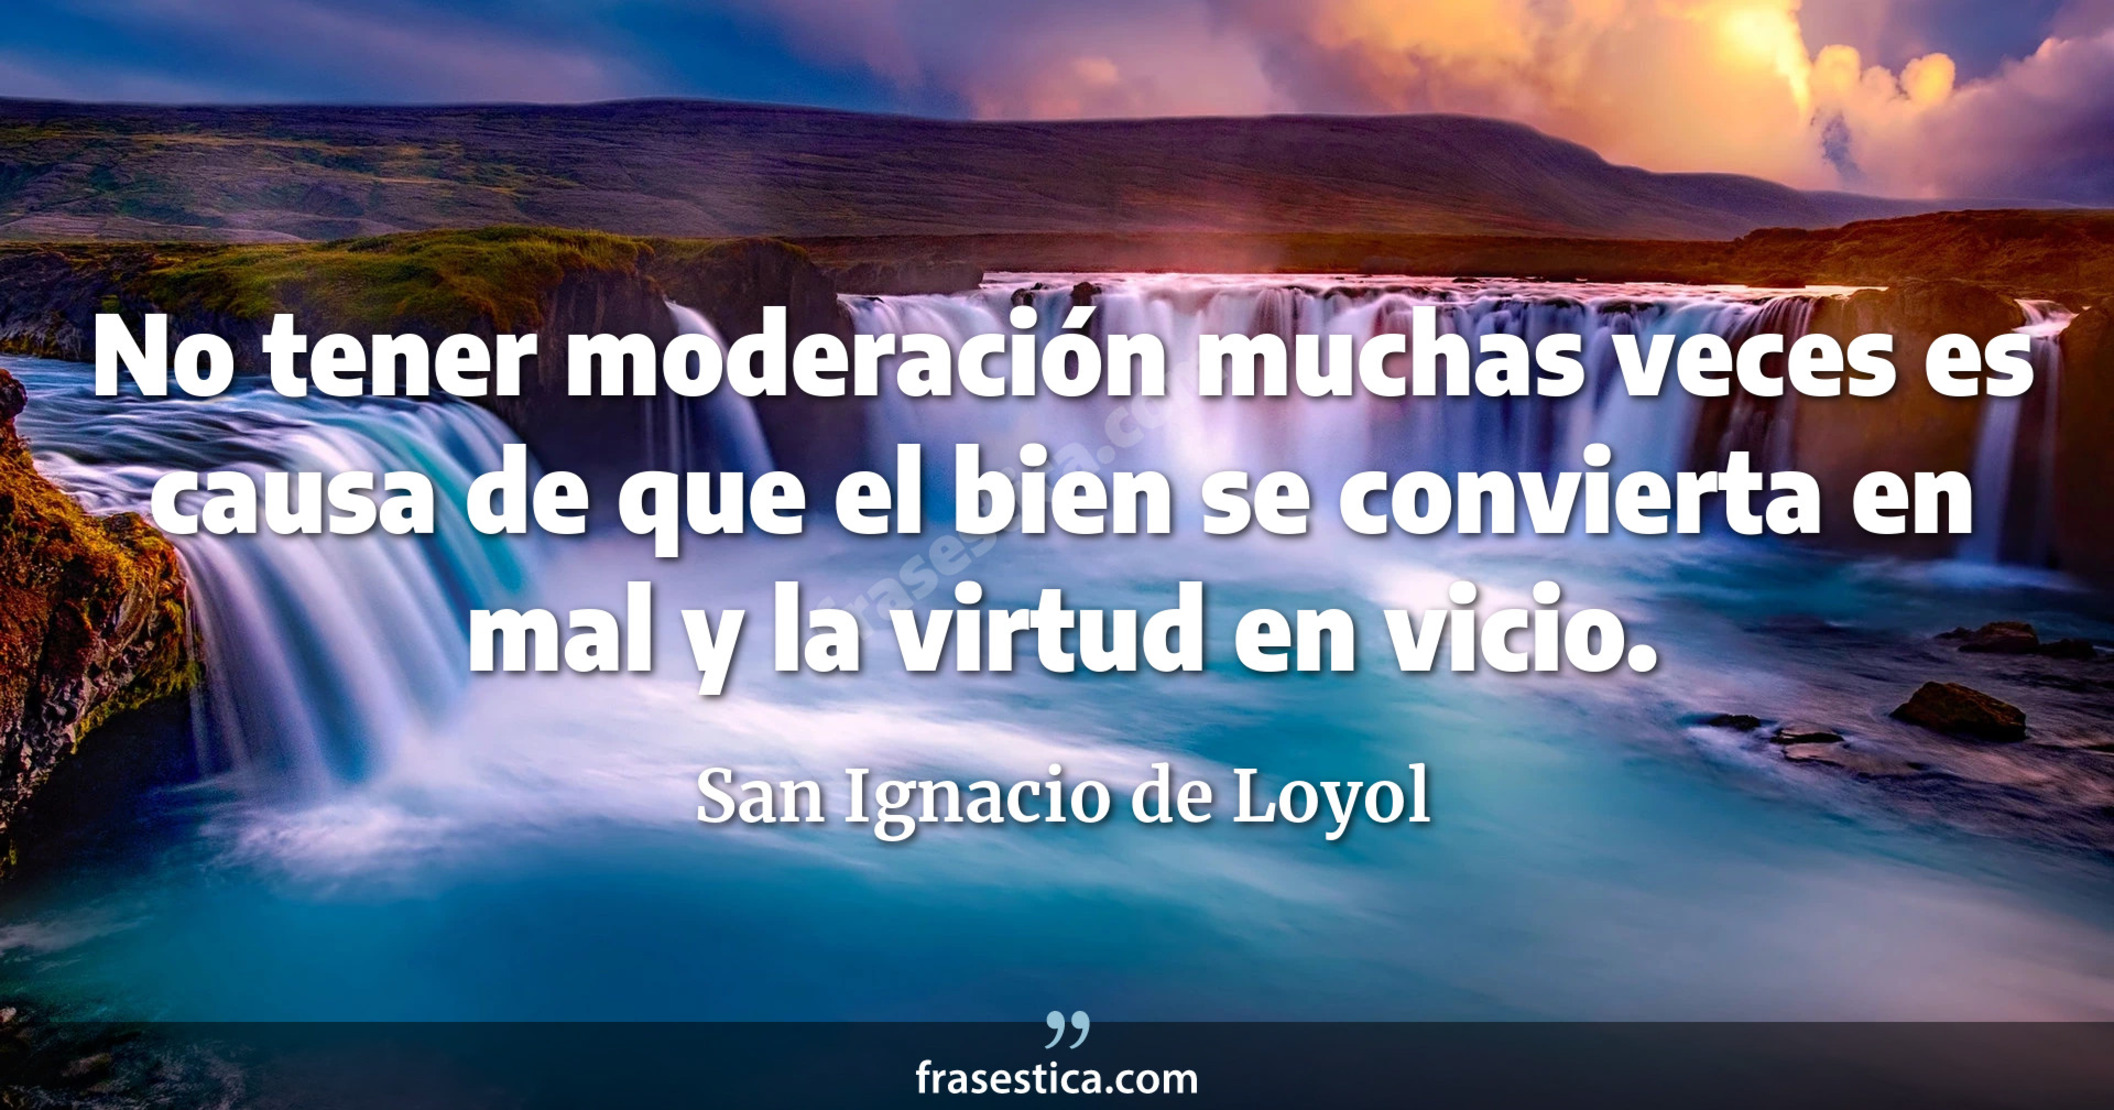 No tener moderación muchas veces es causa de que el bien se convierta en mal y la virtud en vicio. - San Ignacio de Loyol